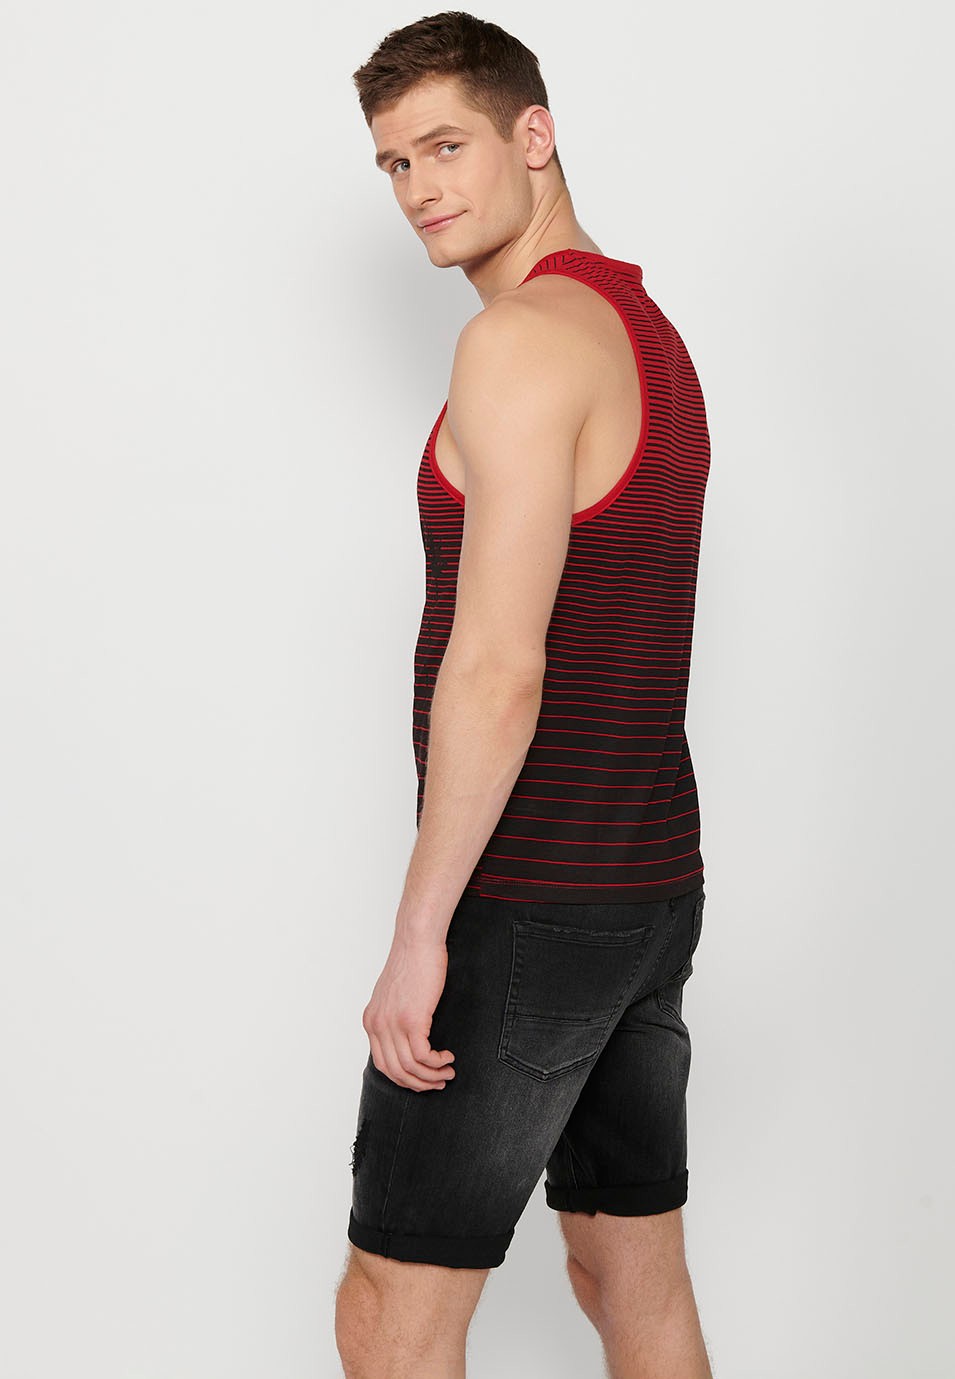 Camiseta sin mangas, estampado delantero, color rojo gradiente para hombre